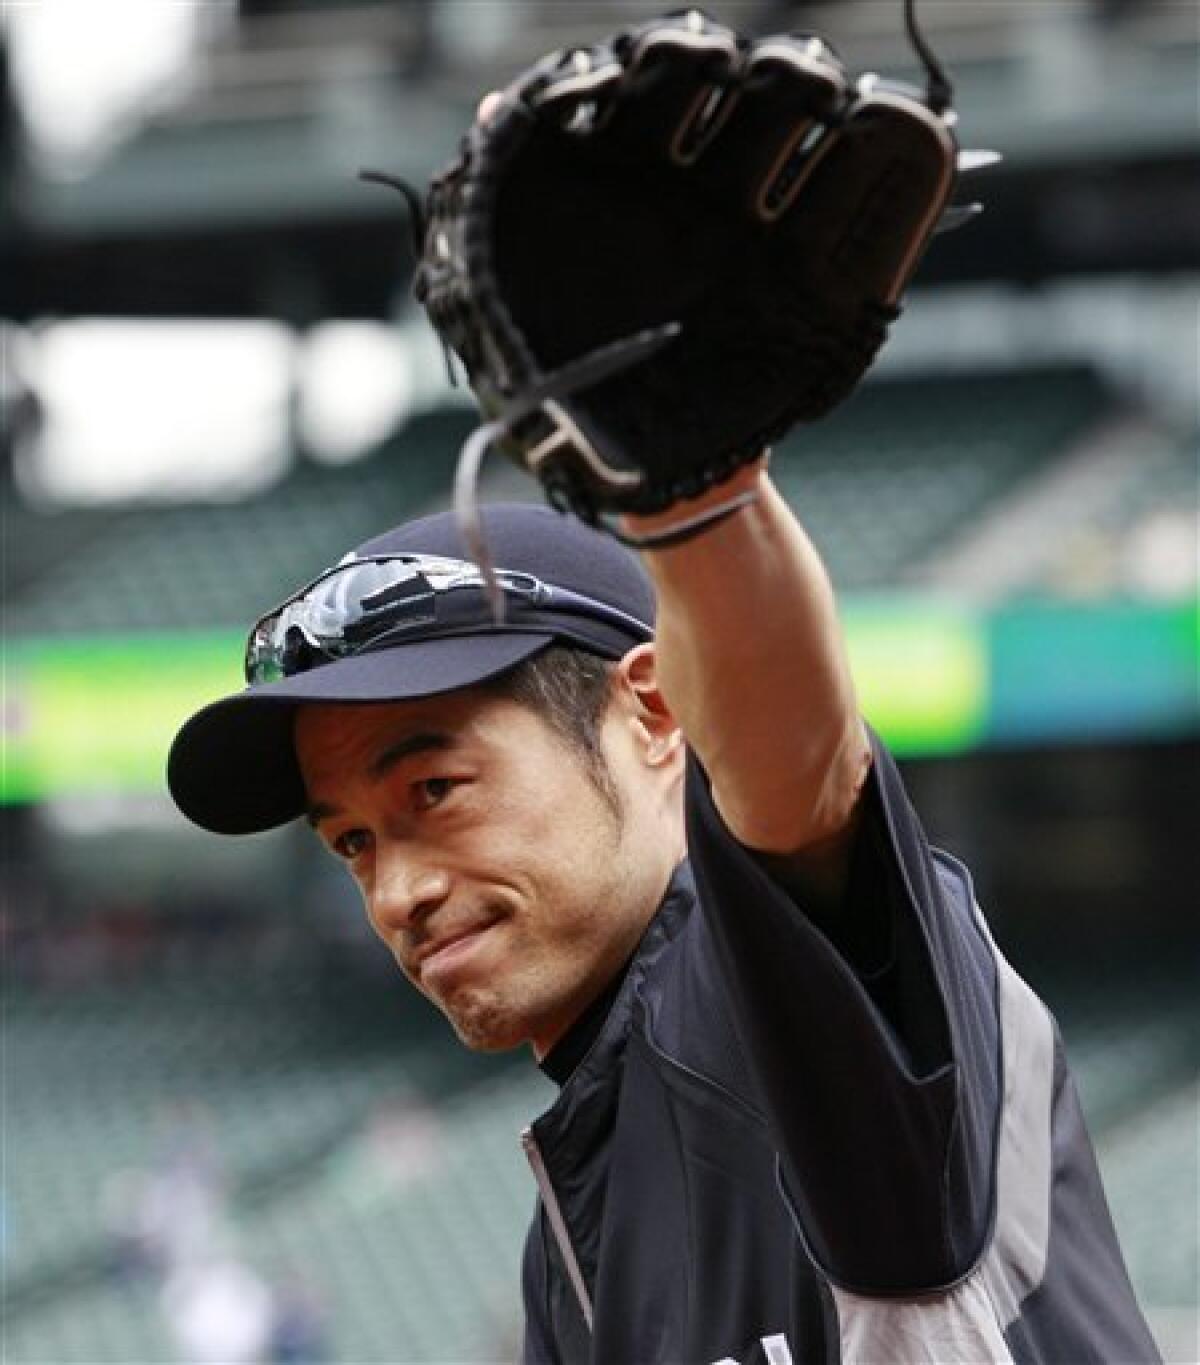 Yankees acquire OF Ichiro Suzuki from Mariners - The San Diego Union-Tribune